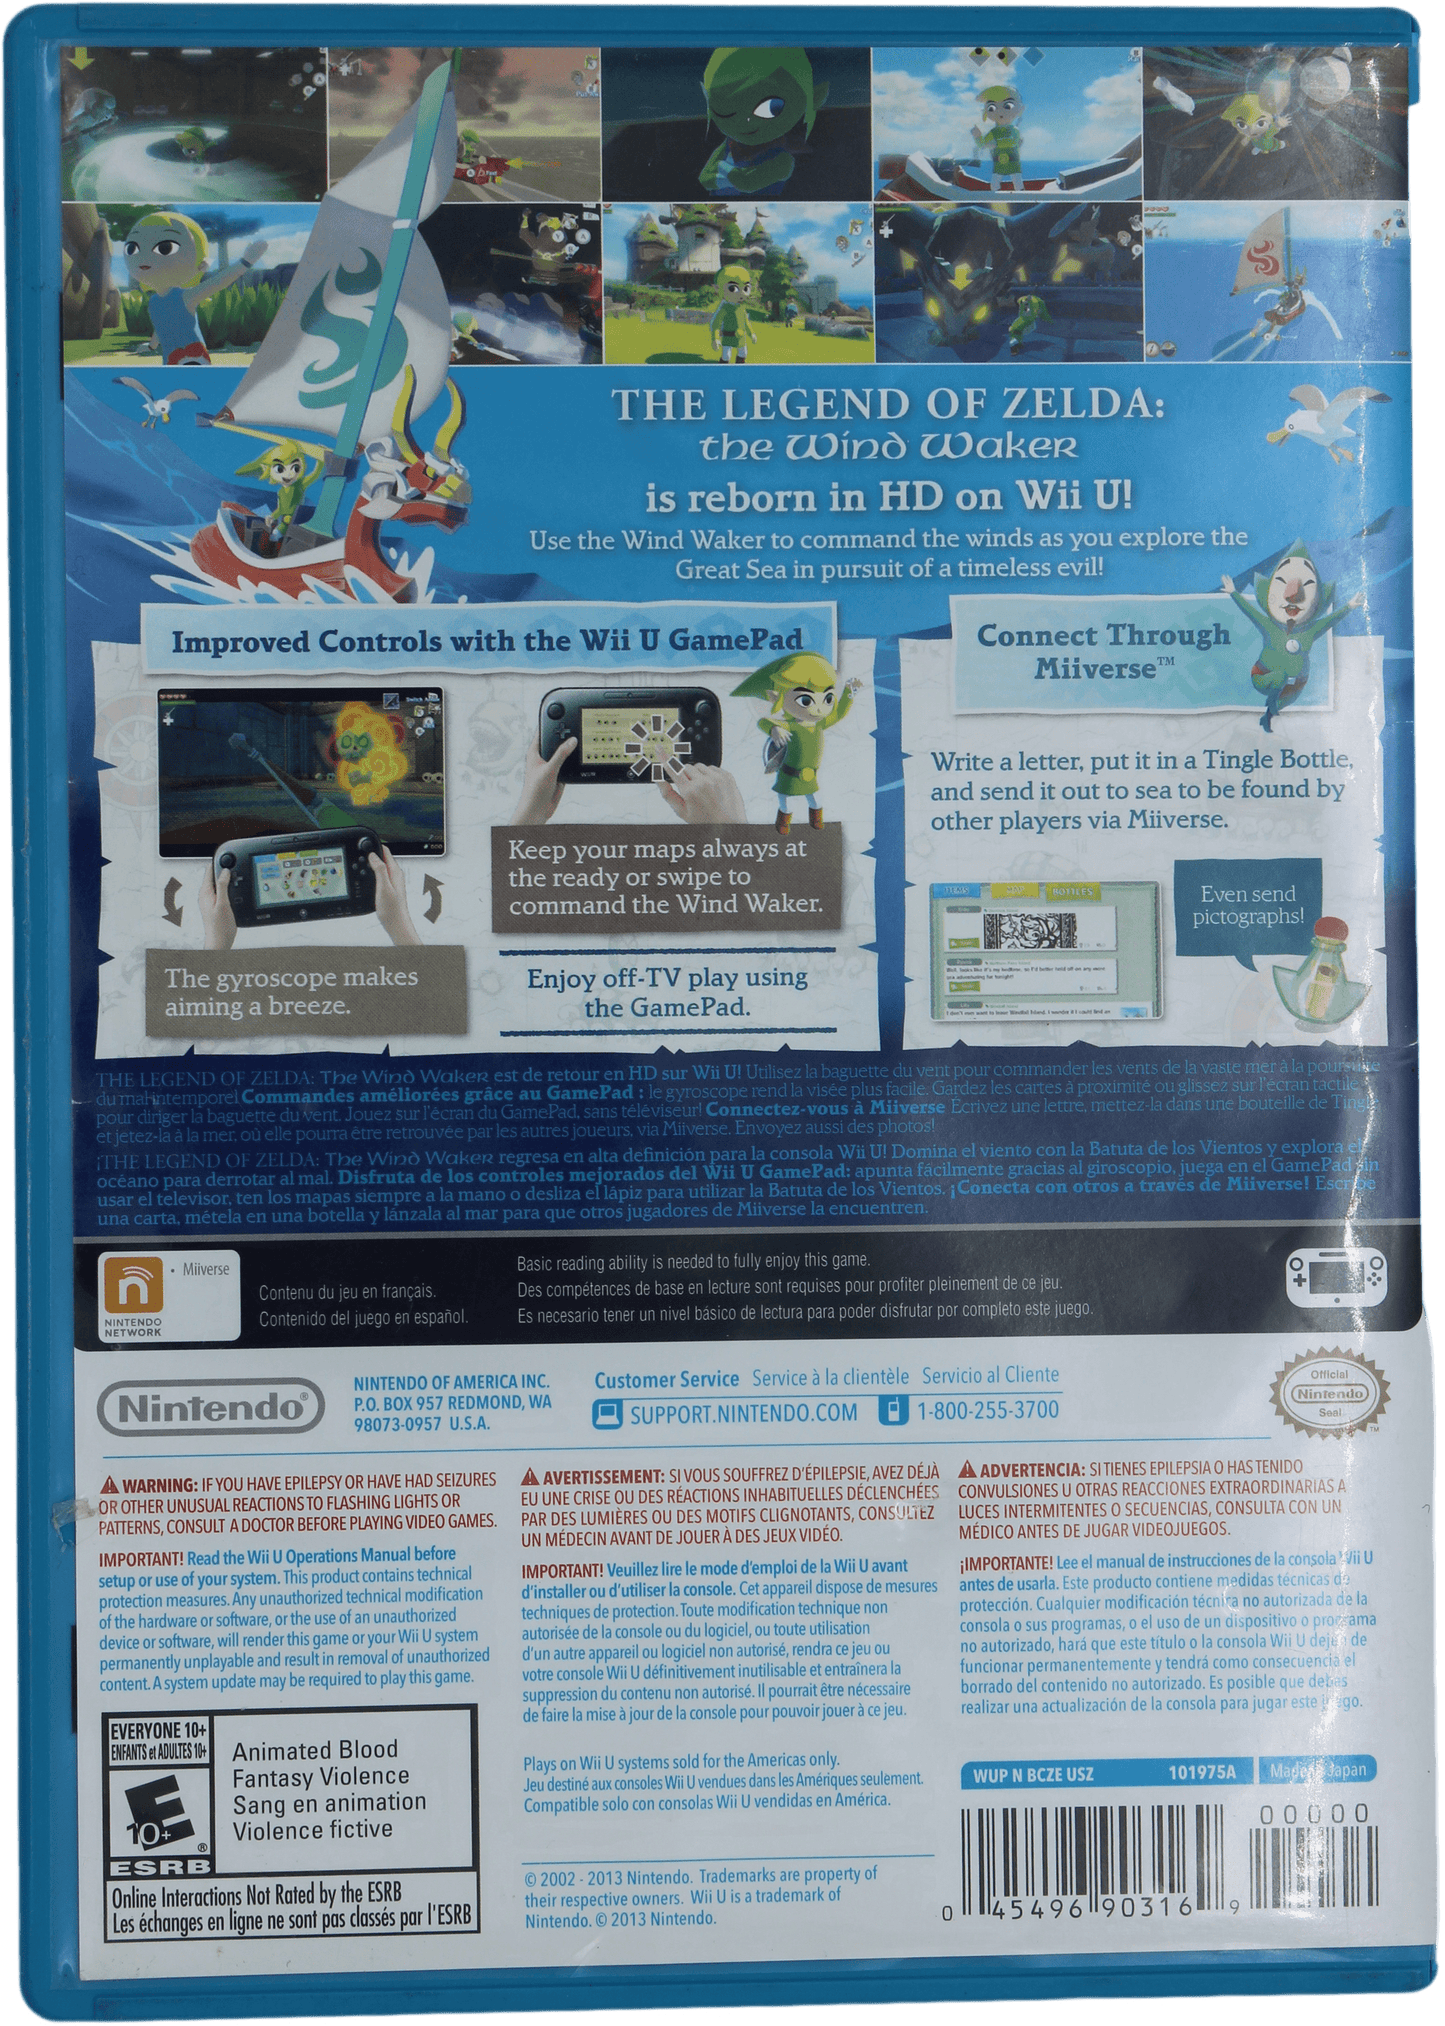 The Legend Of Zelda: The Windwaker HD